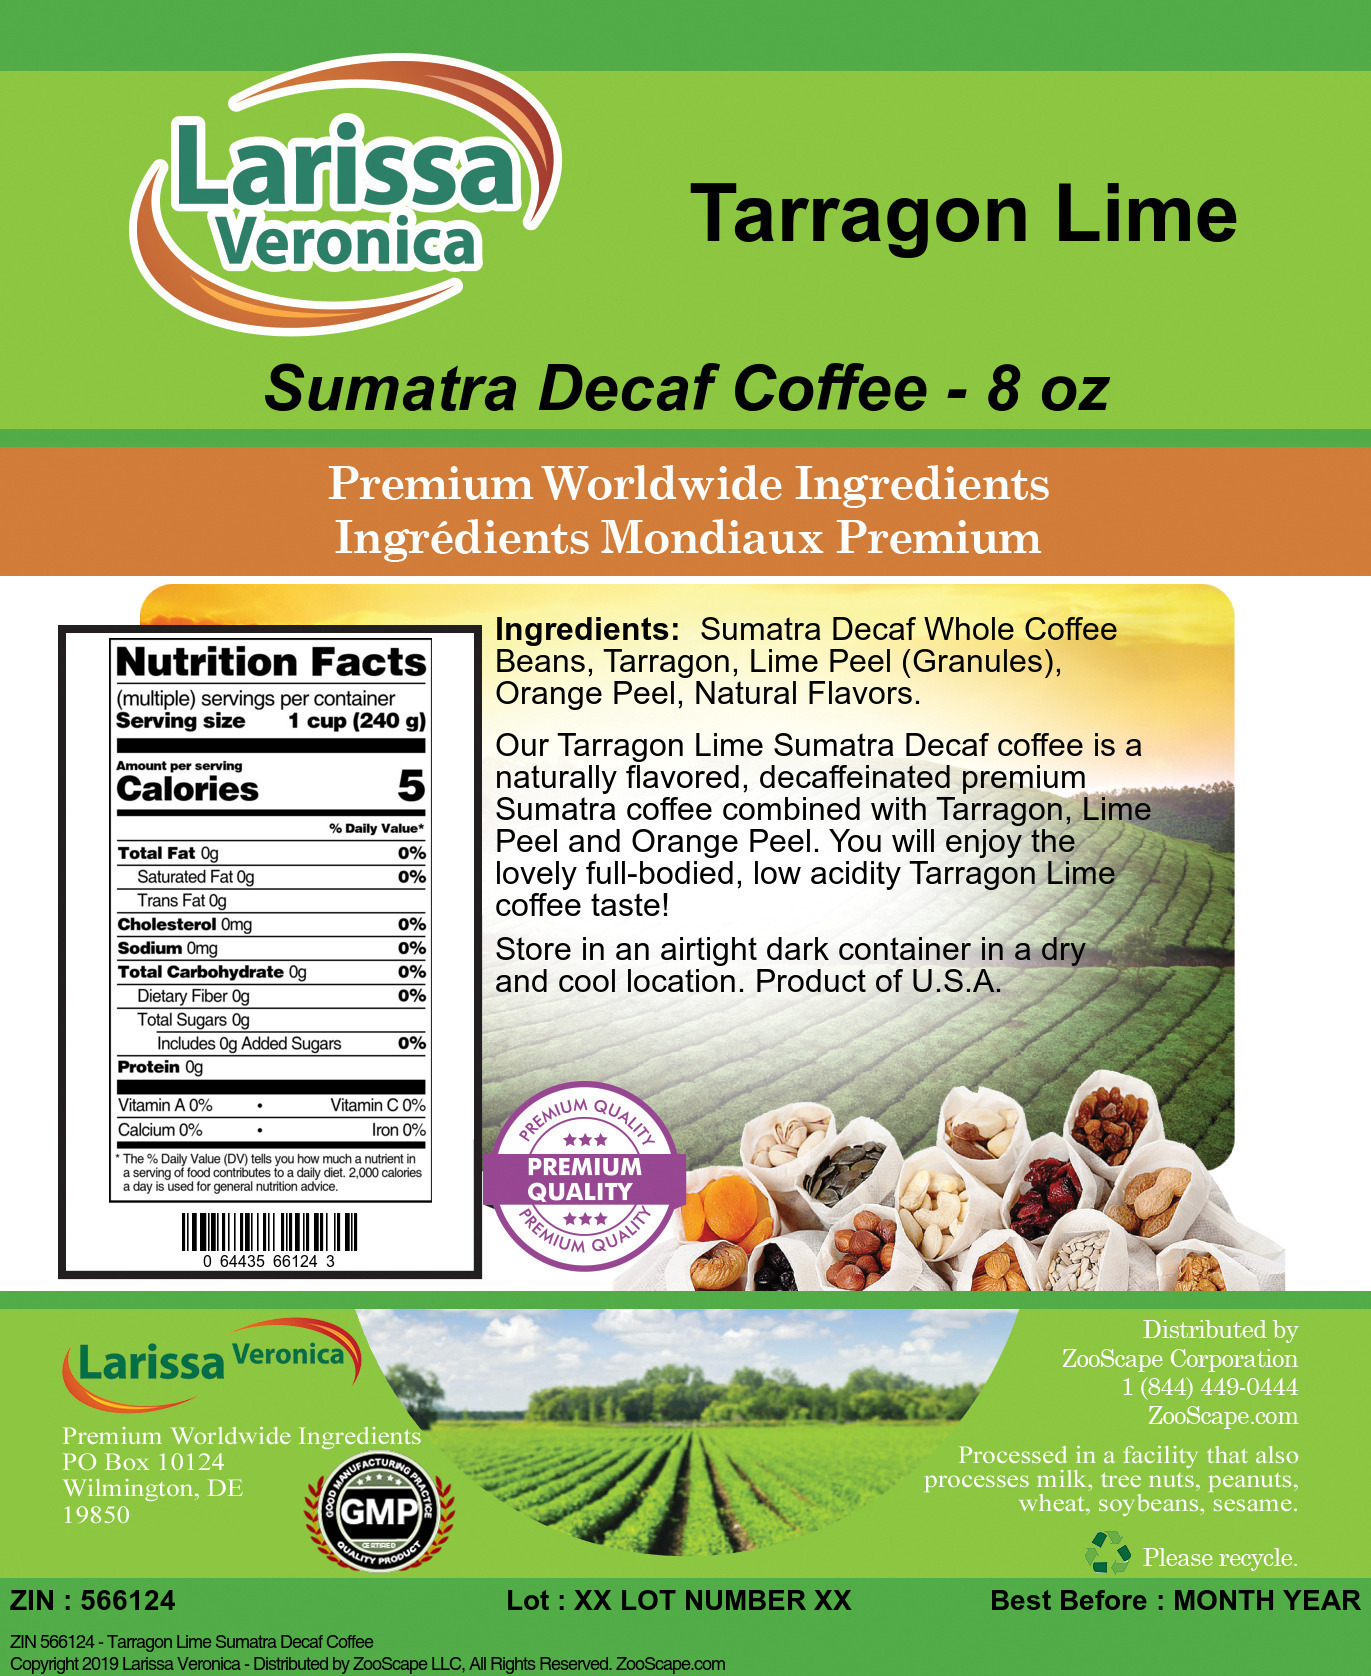 Tarragon Lime Sumatra Decaf Coffee - Label